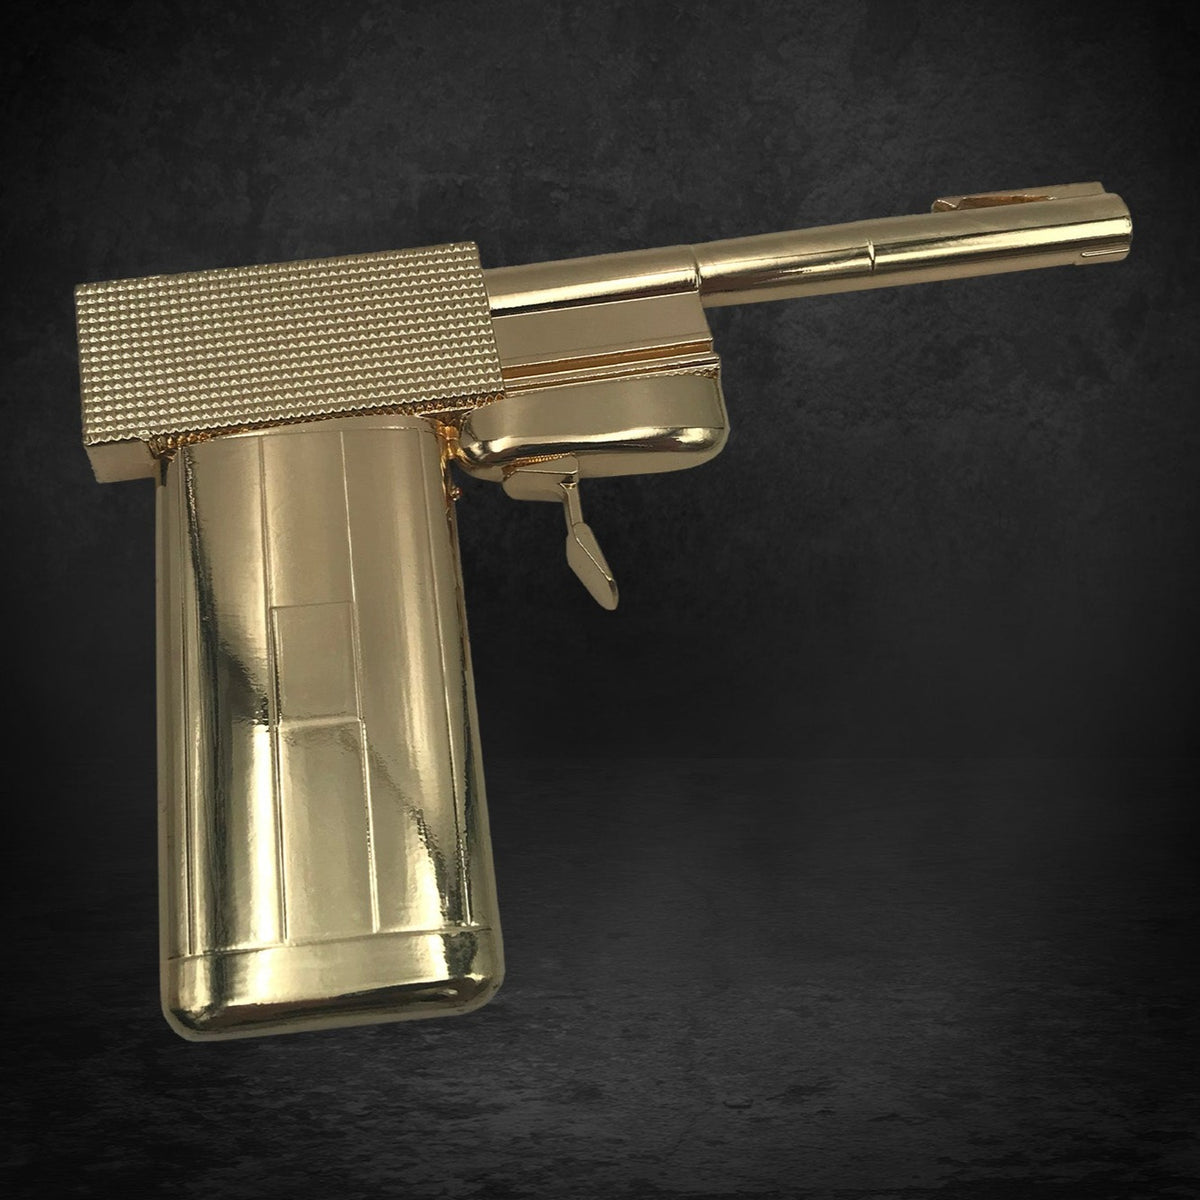 James Bond Golden Gun Prop Replica (Outlet Item)